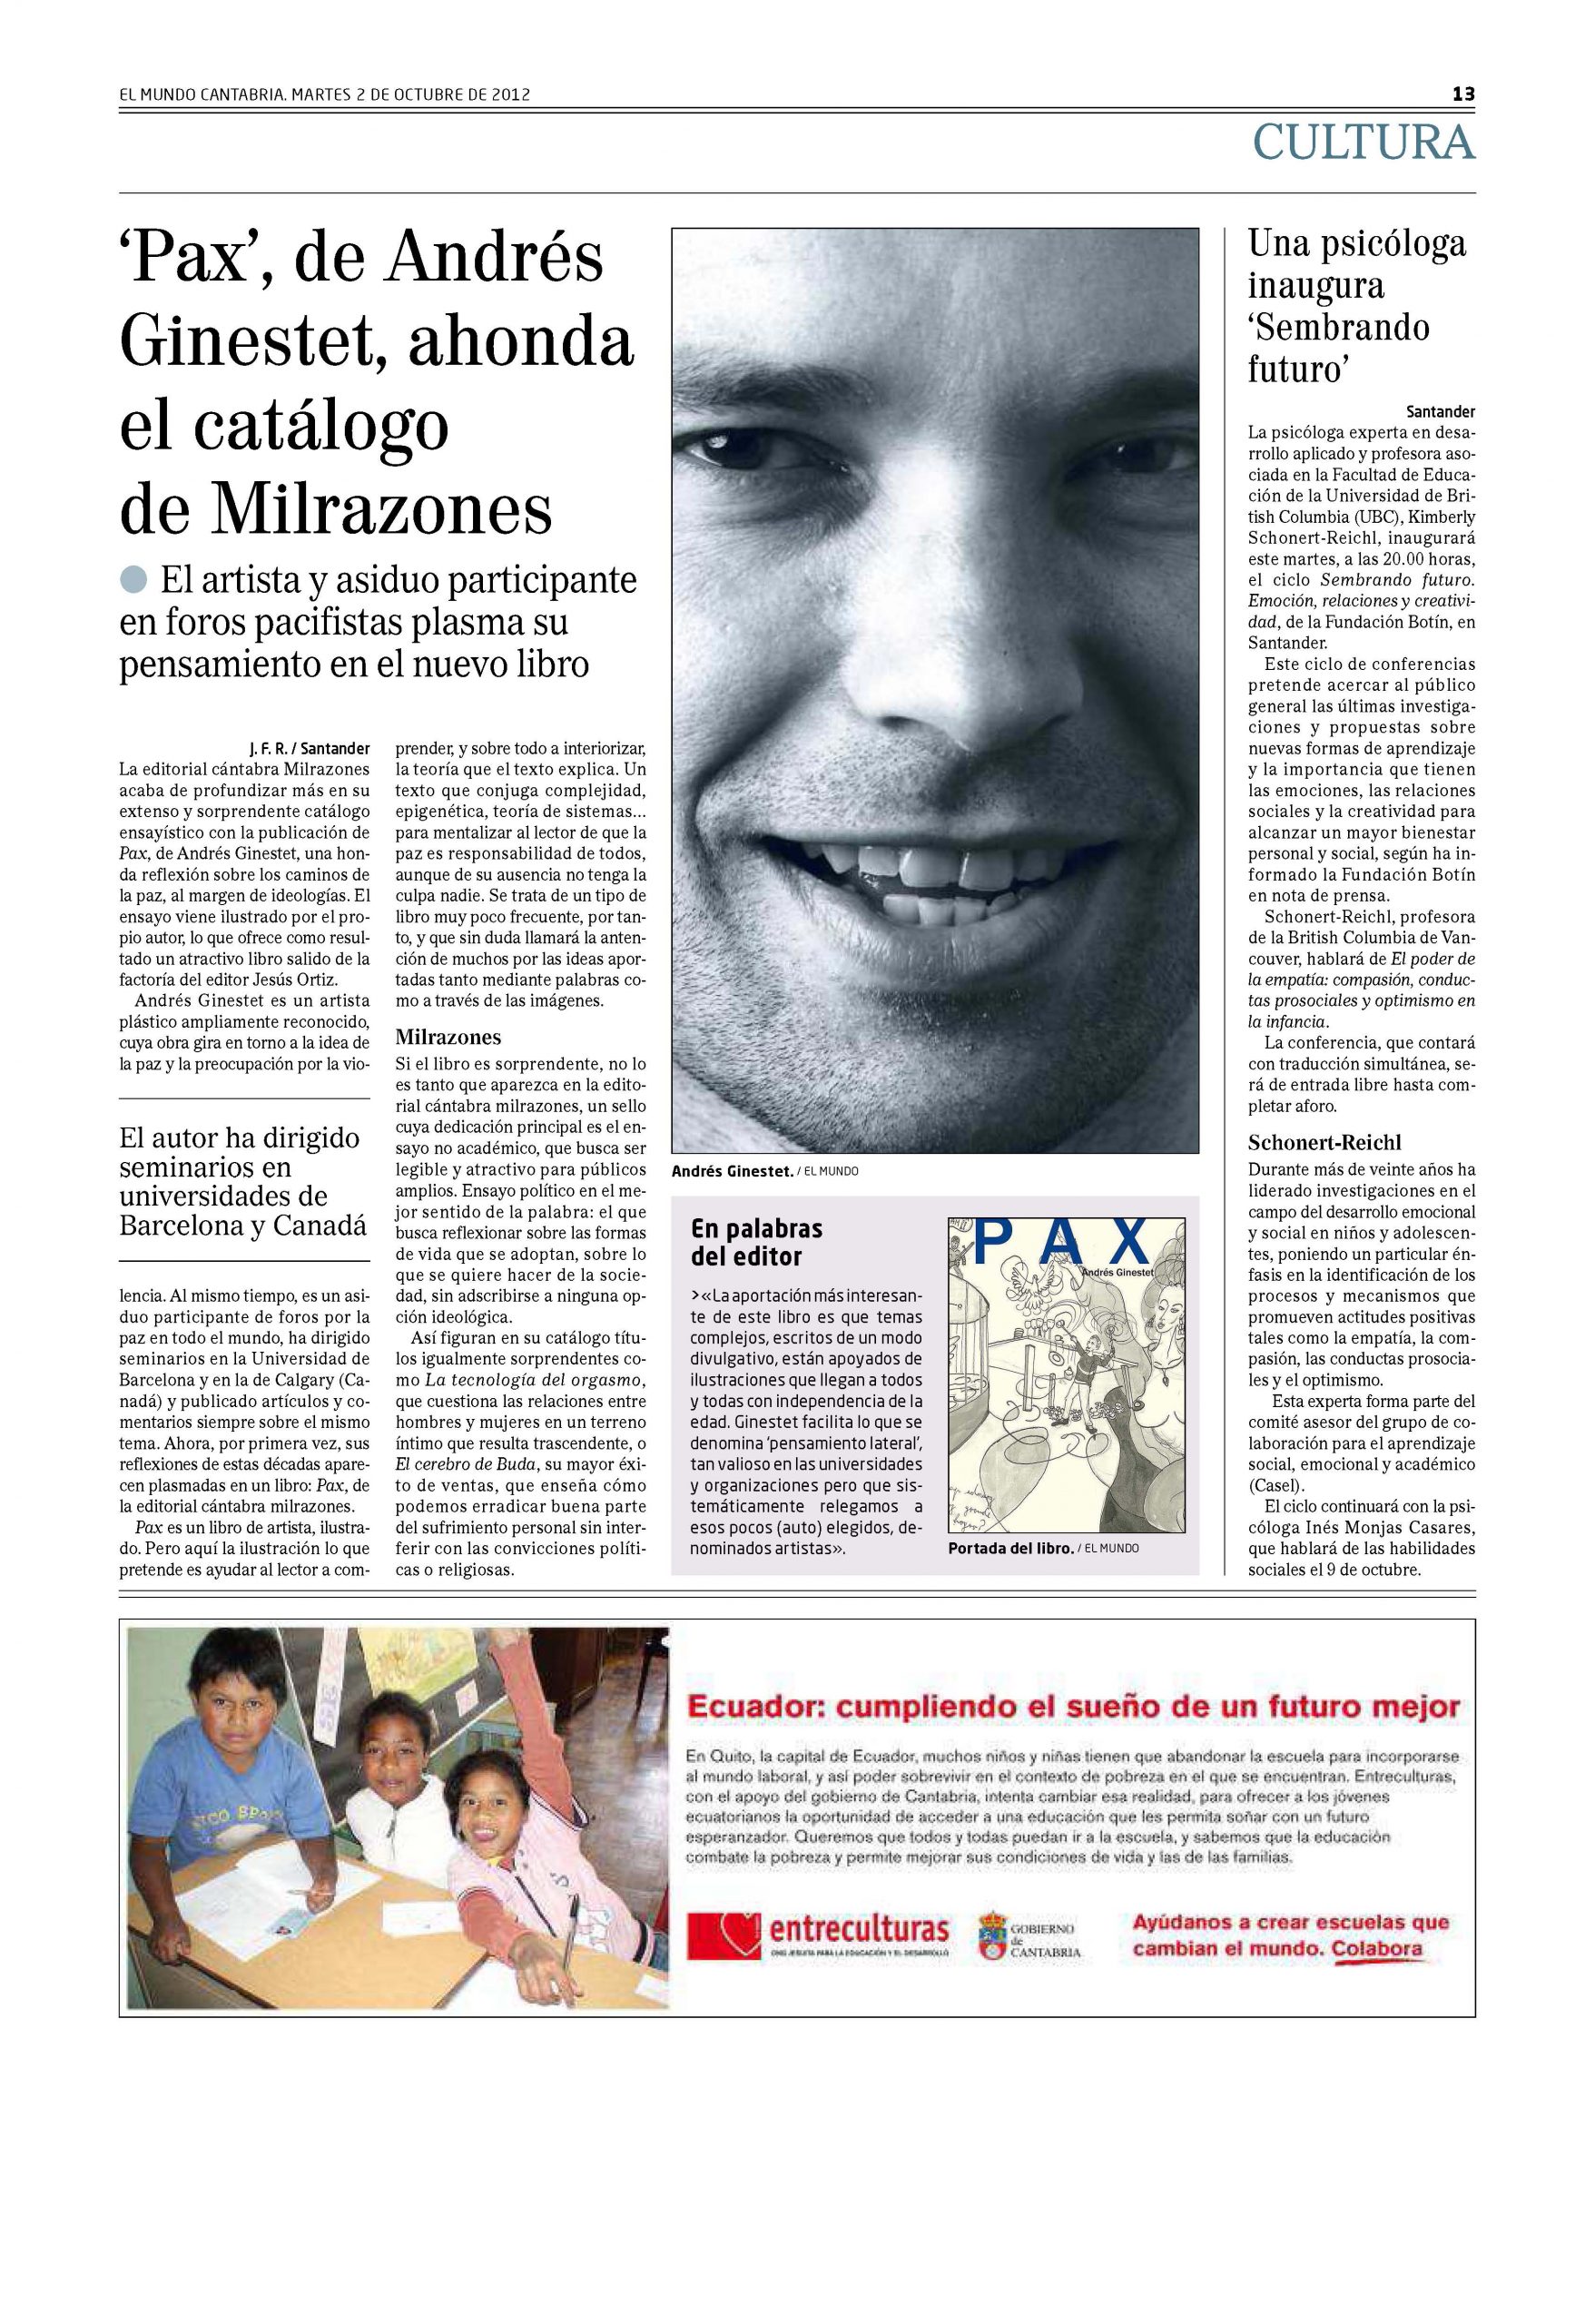 Zeitungsausschnitt aus der Tageszeitung "El Mundo" Spanien